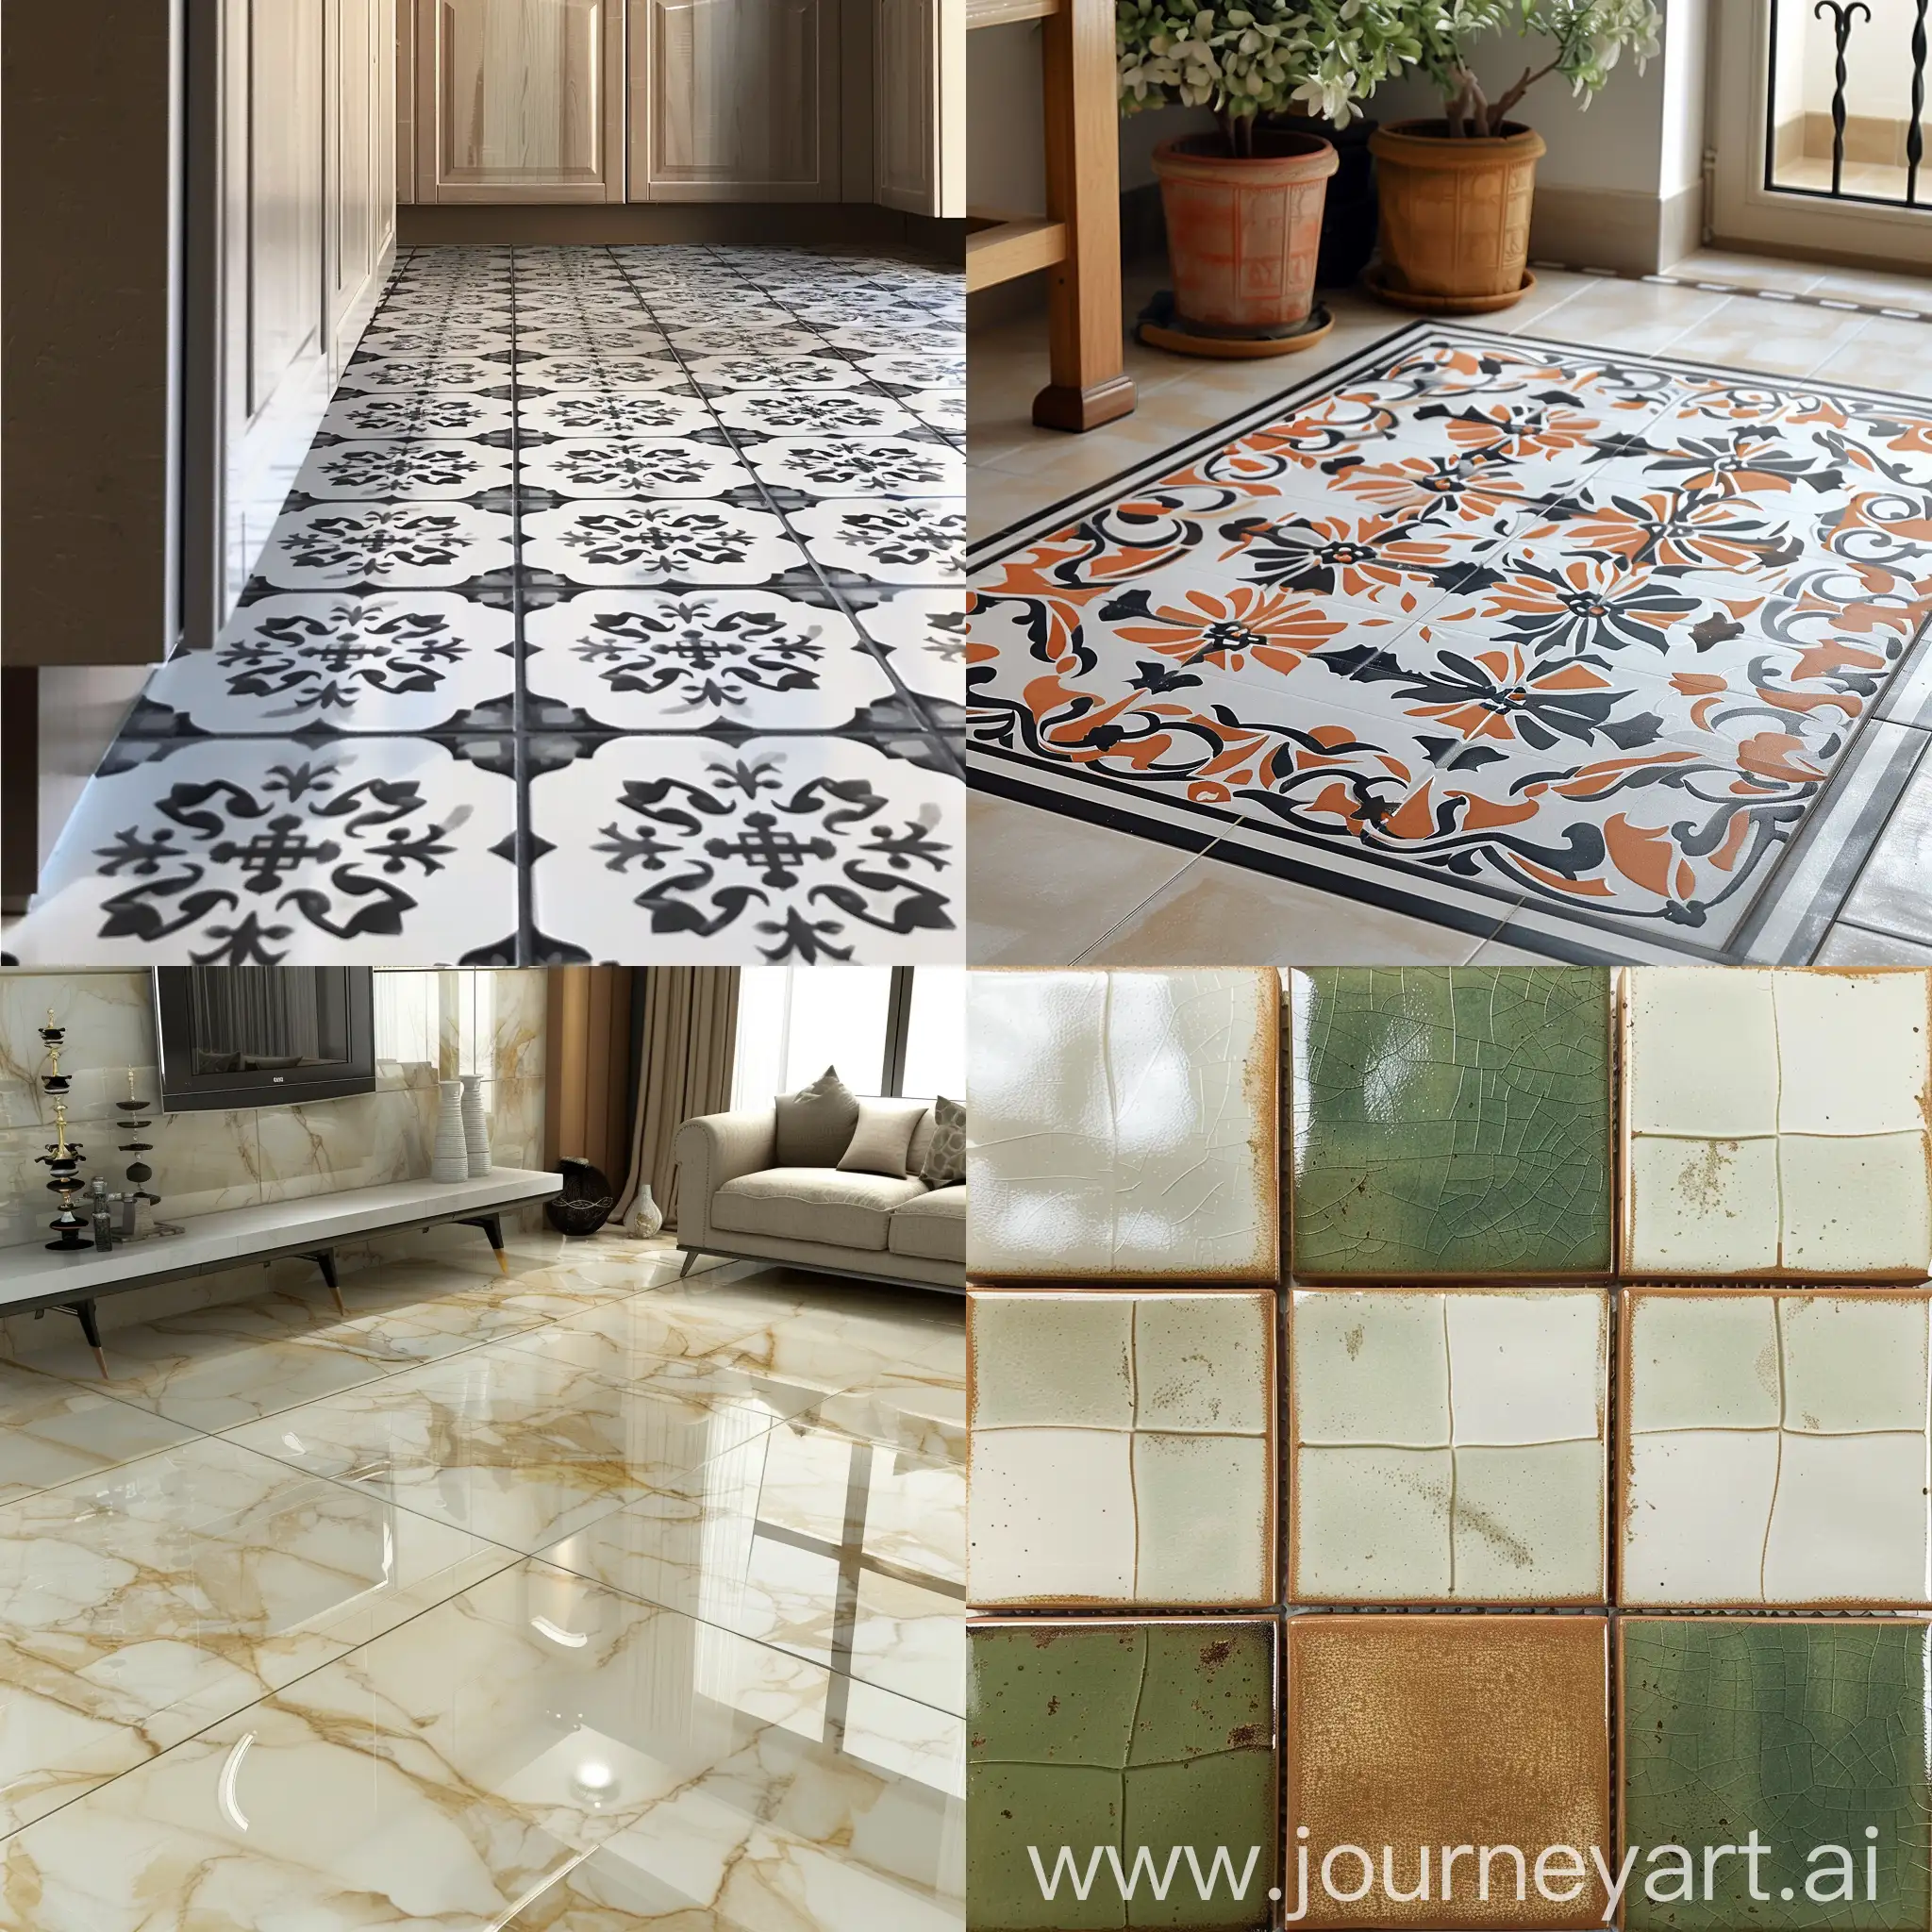 Beautiful-New-Ceramic-Tiles-in-Clean-Setting